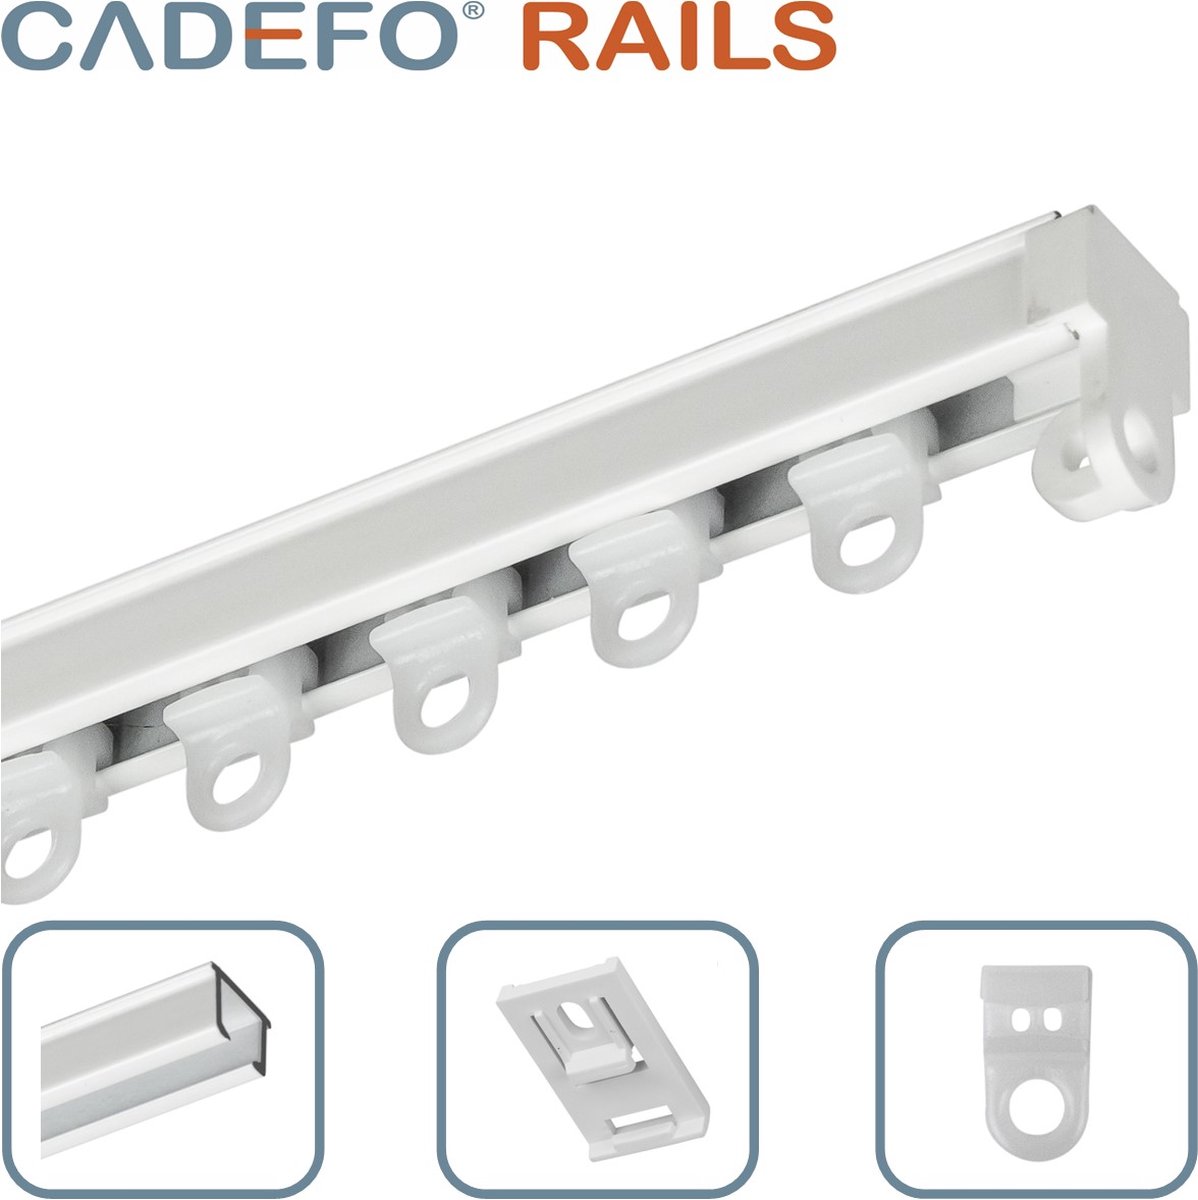 CADEFO RAILS (301 - 350 cm) Gordijnrails - Compleet op maat! - UIT 1 STUK - Leverbaar tot 6 meter - Plafondbevestiging - Lengte 331 cm